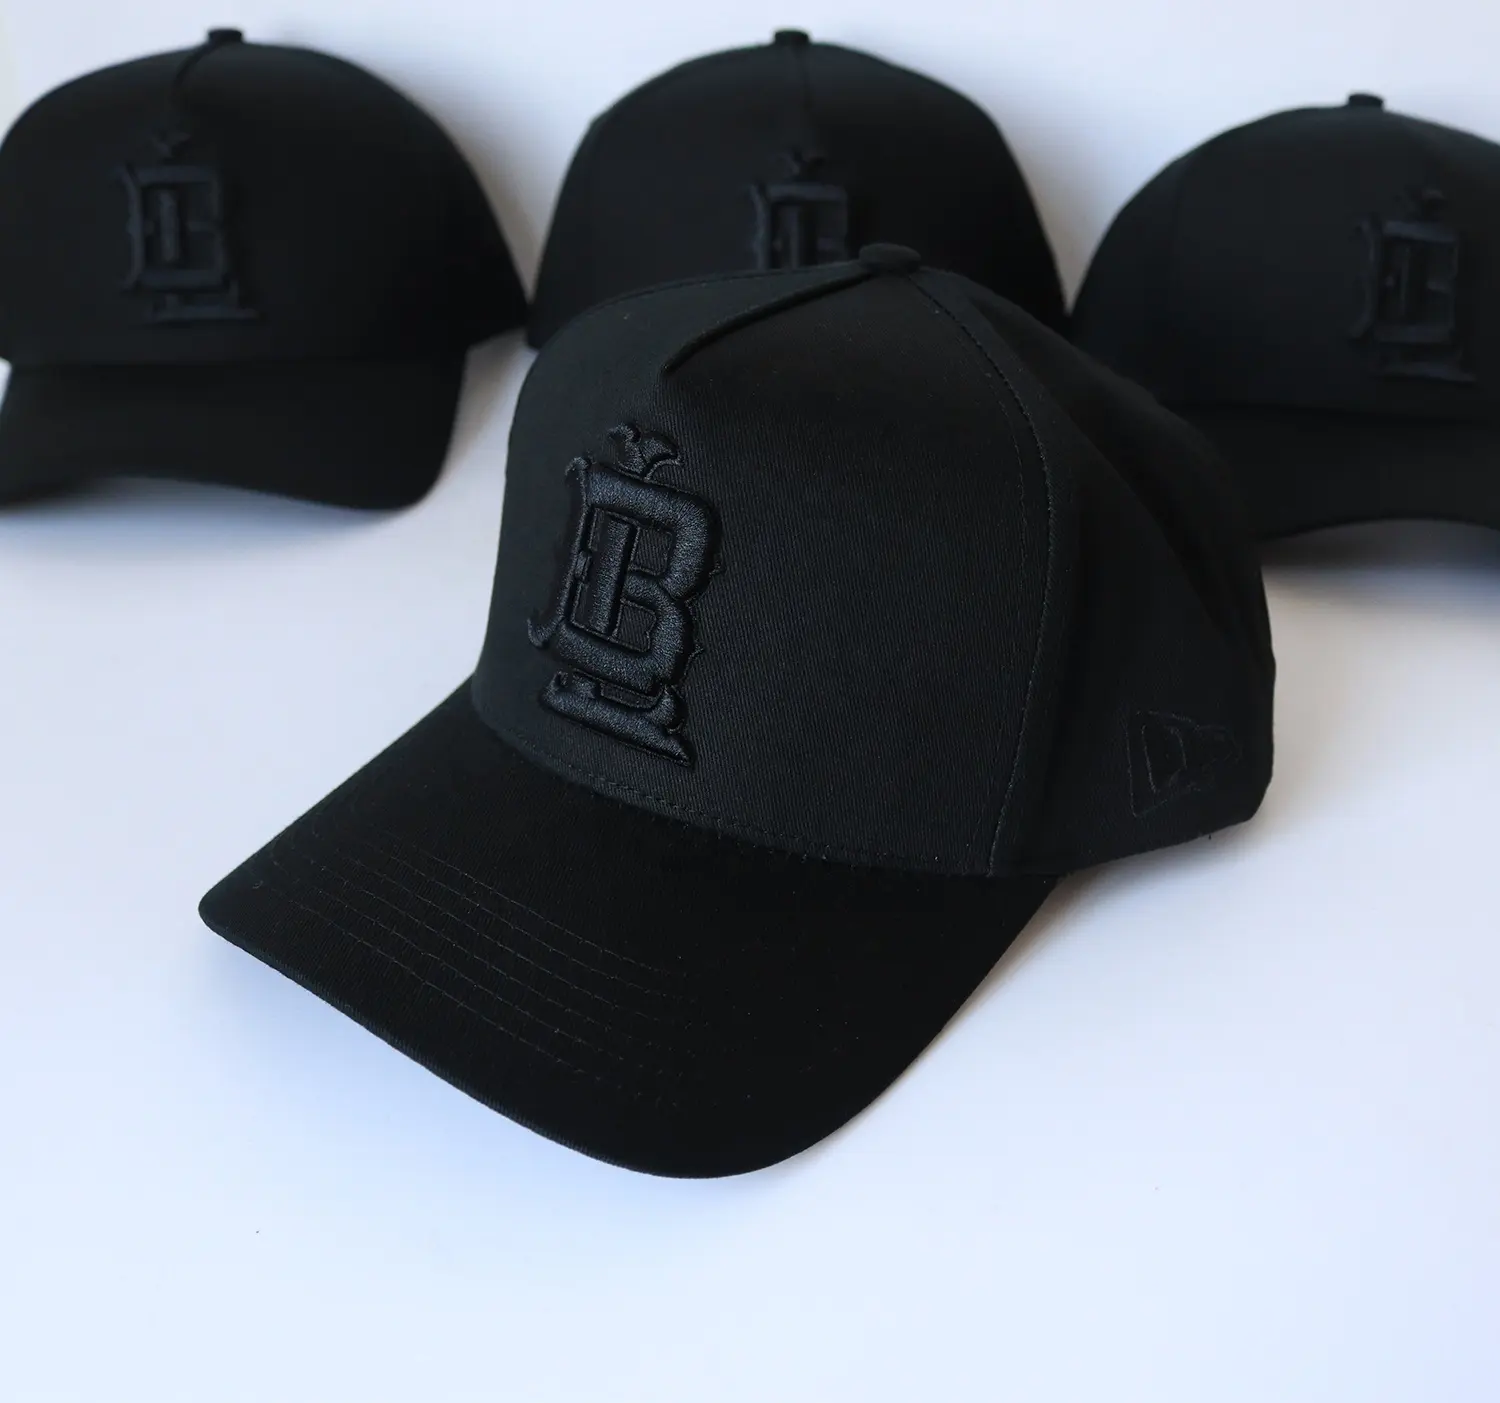 Logo personnalisé 5 panneau maille chapeau publicité extérieure logo noir de haute qualité sur casquettes noires casquettes de baseball